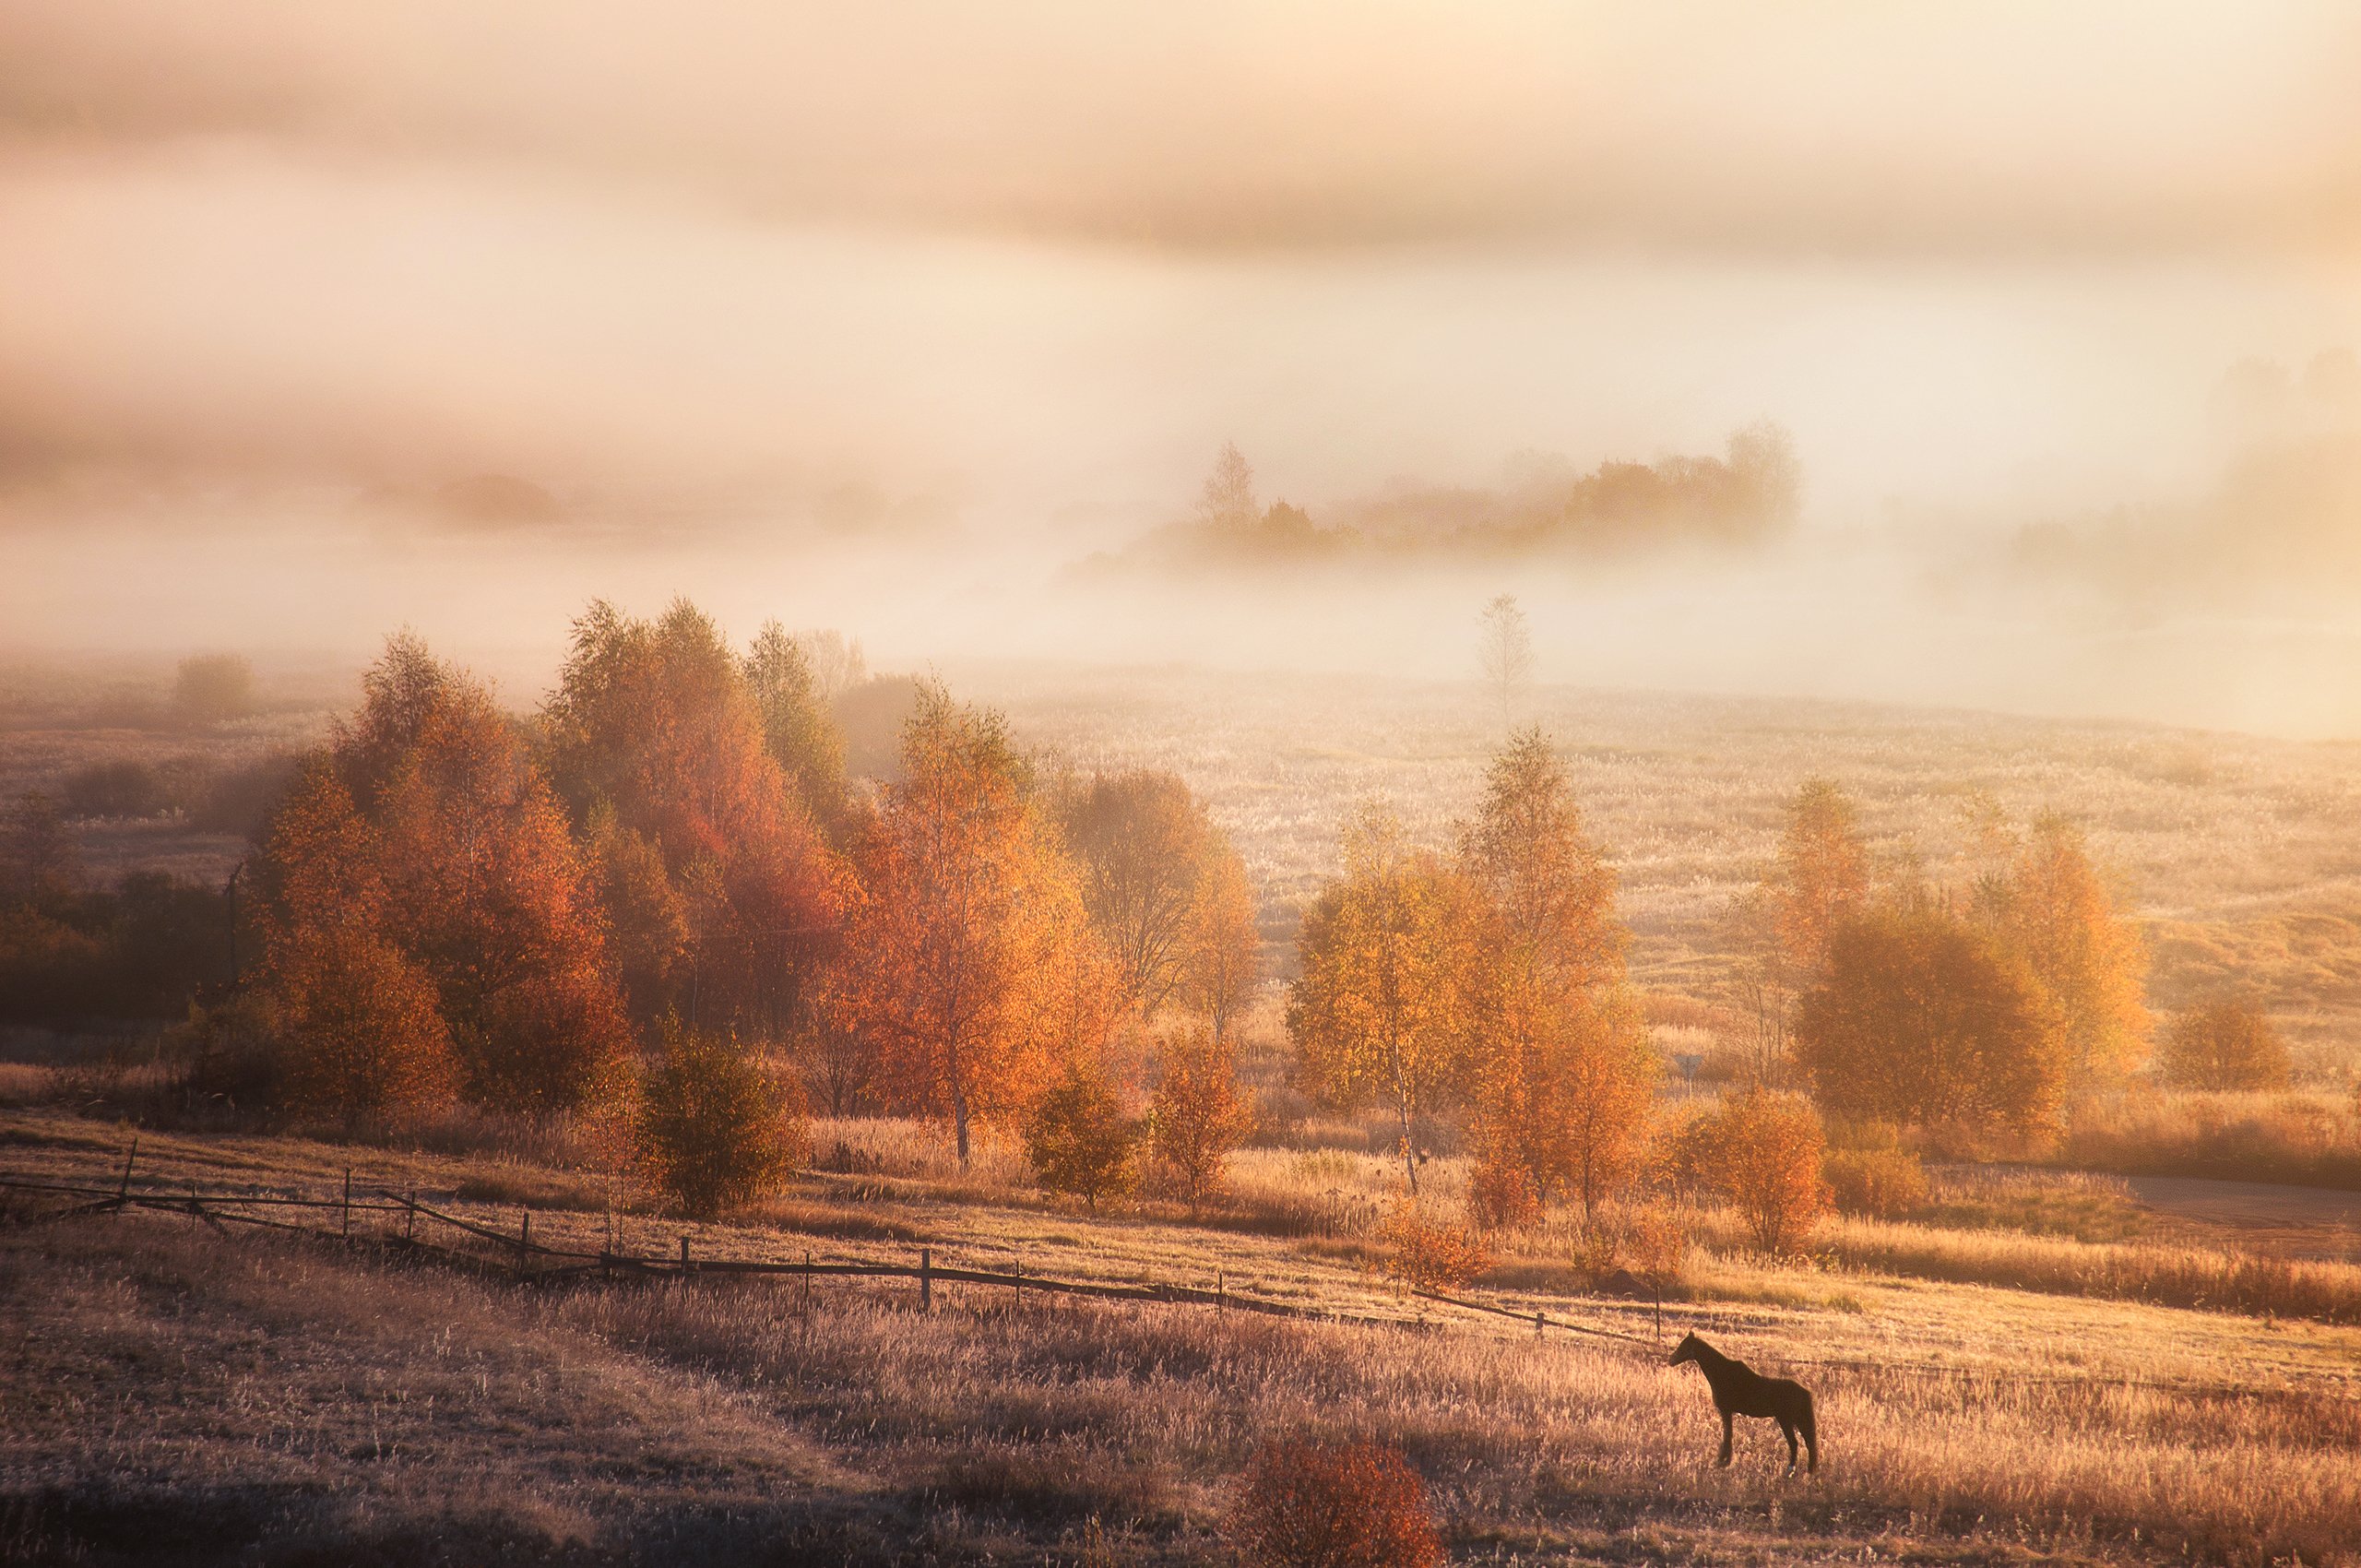 осень, природа, пейзаж, солнце, туман, лошадь, рассвет, утро, autumn, nature, landscape, sun, fog, horse, dawn, morning, Алексей Сергованцев